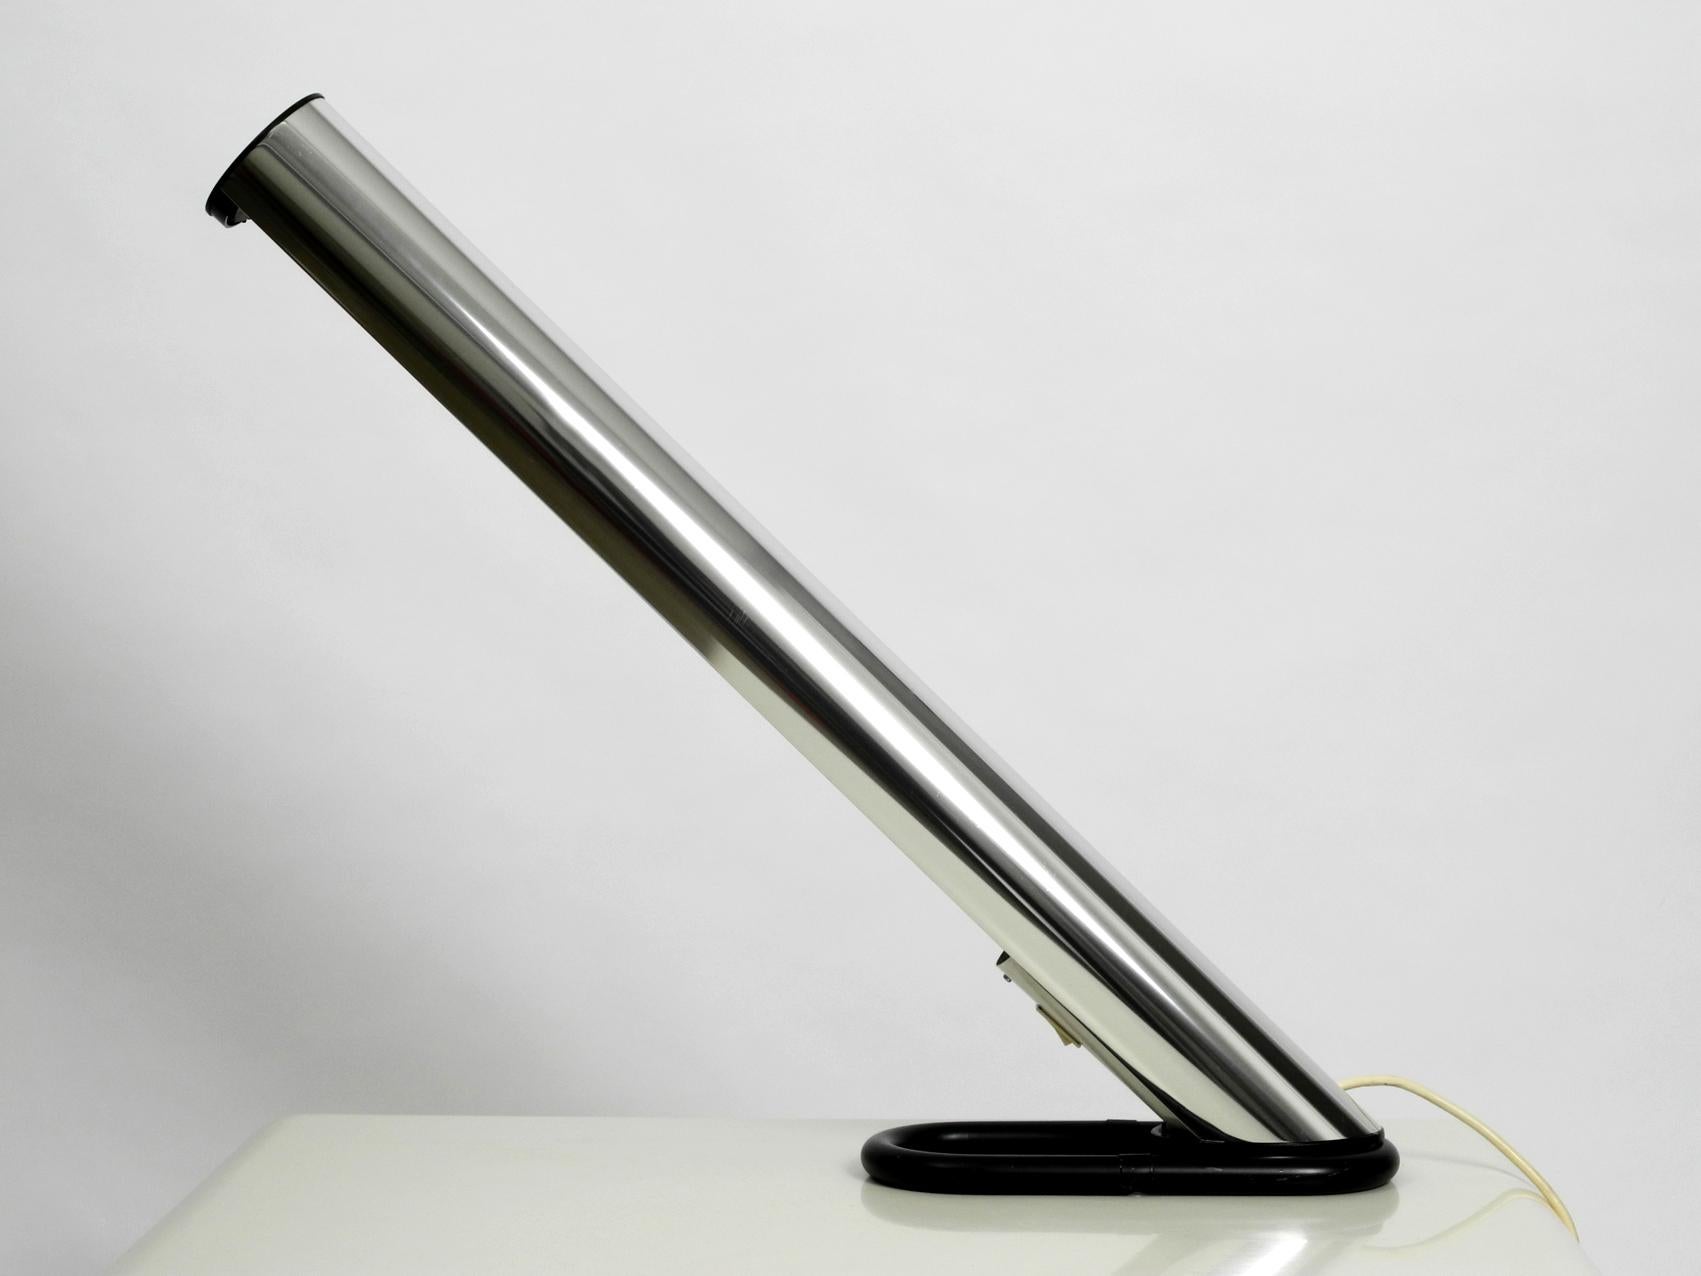 Très rare lampe de table XXL Rocket des années 1970 par Göran Pehrson pour Ateljé Lyktan Ahus. Fabriqué en Suède, design futuriste et minimaliste de l'ère spatiale des années 1970. L'abat-jour est en aluminium chromé. Le pied est fait de fer lourd.